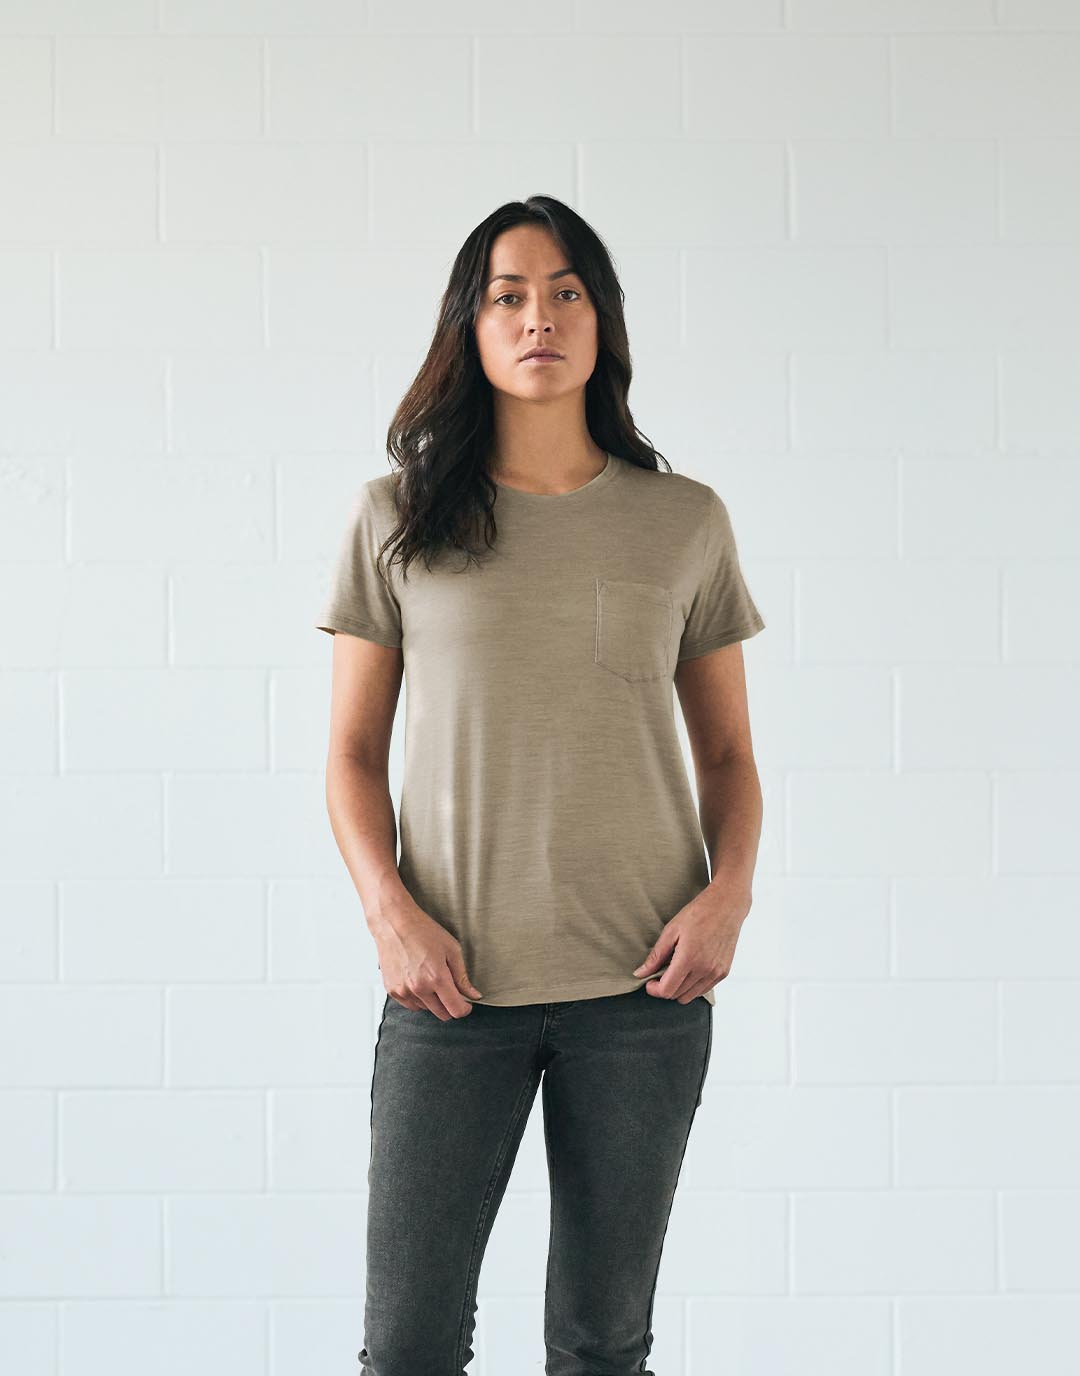 Une femme debout qui porte un t-shirt teint avec des pigments végétaux naturels de provenance durable